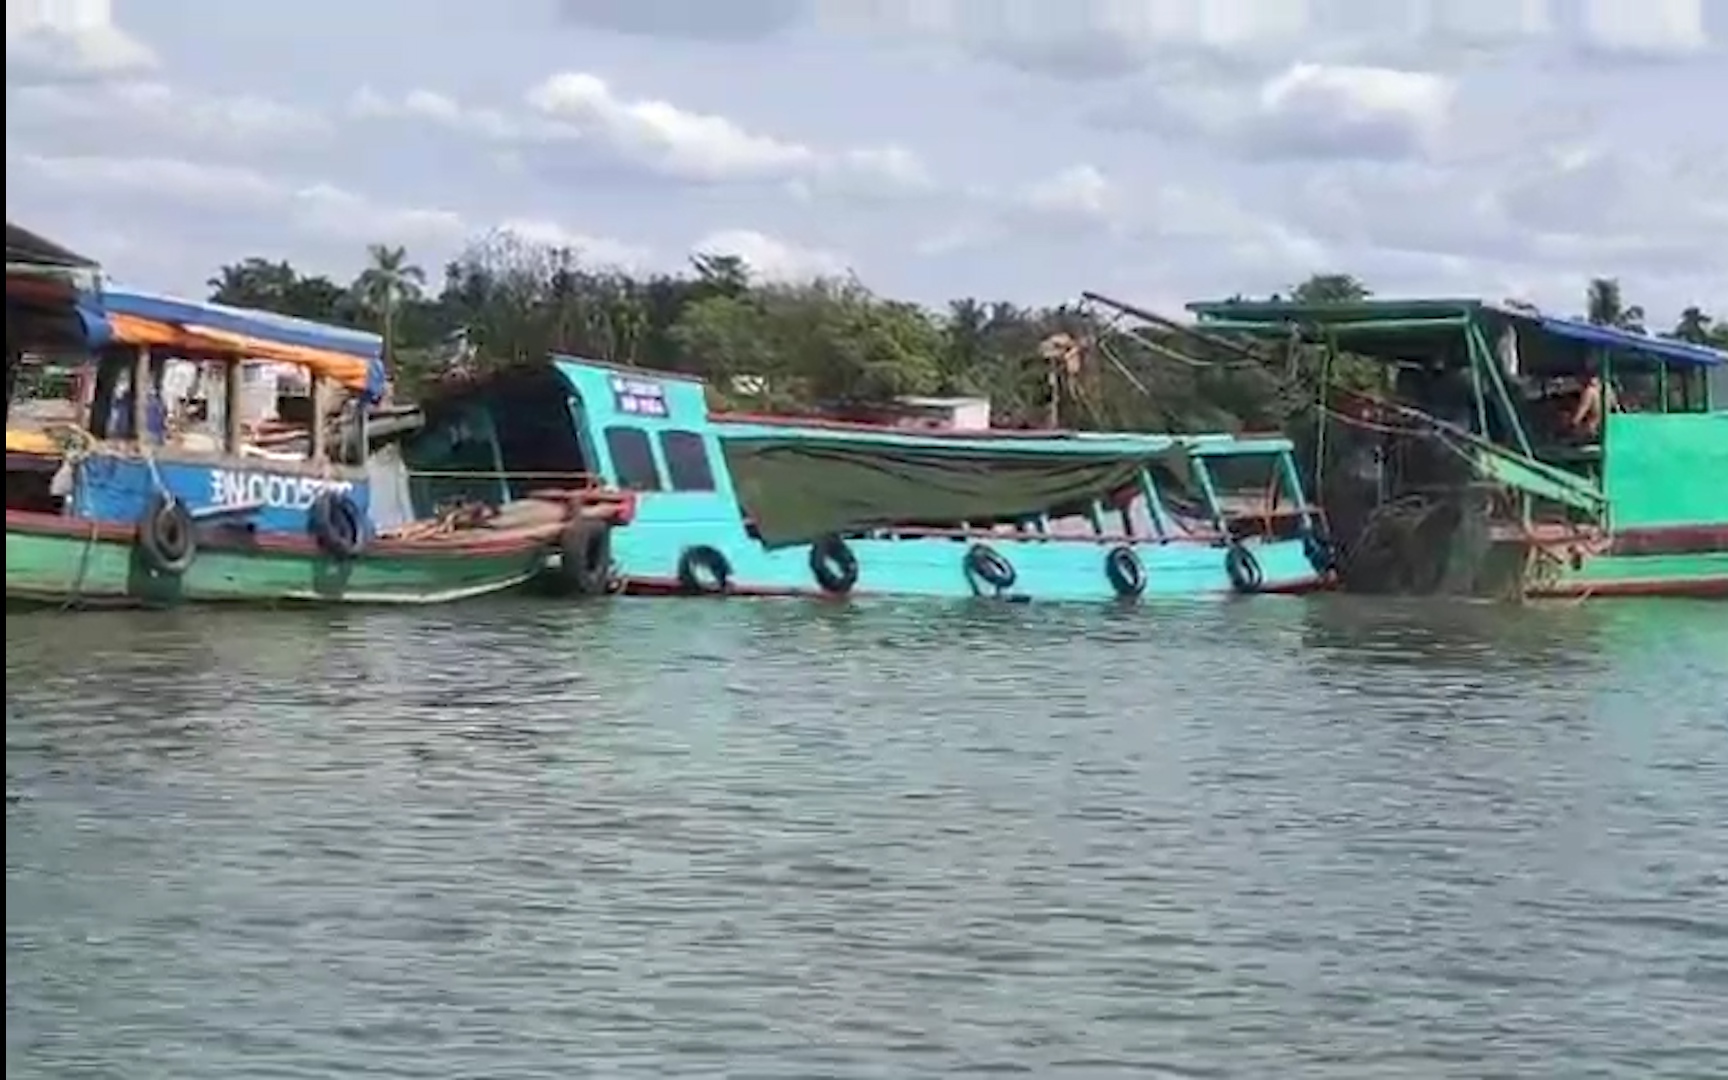 Đồng Nai: Lật thuyền gần cù lao Ba Xê, 12 người rơi xuống nước, 1 phụ nữ mang thai tử vong